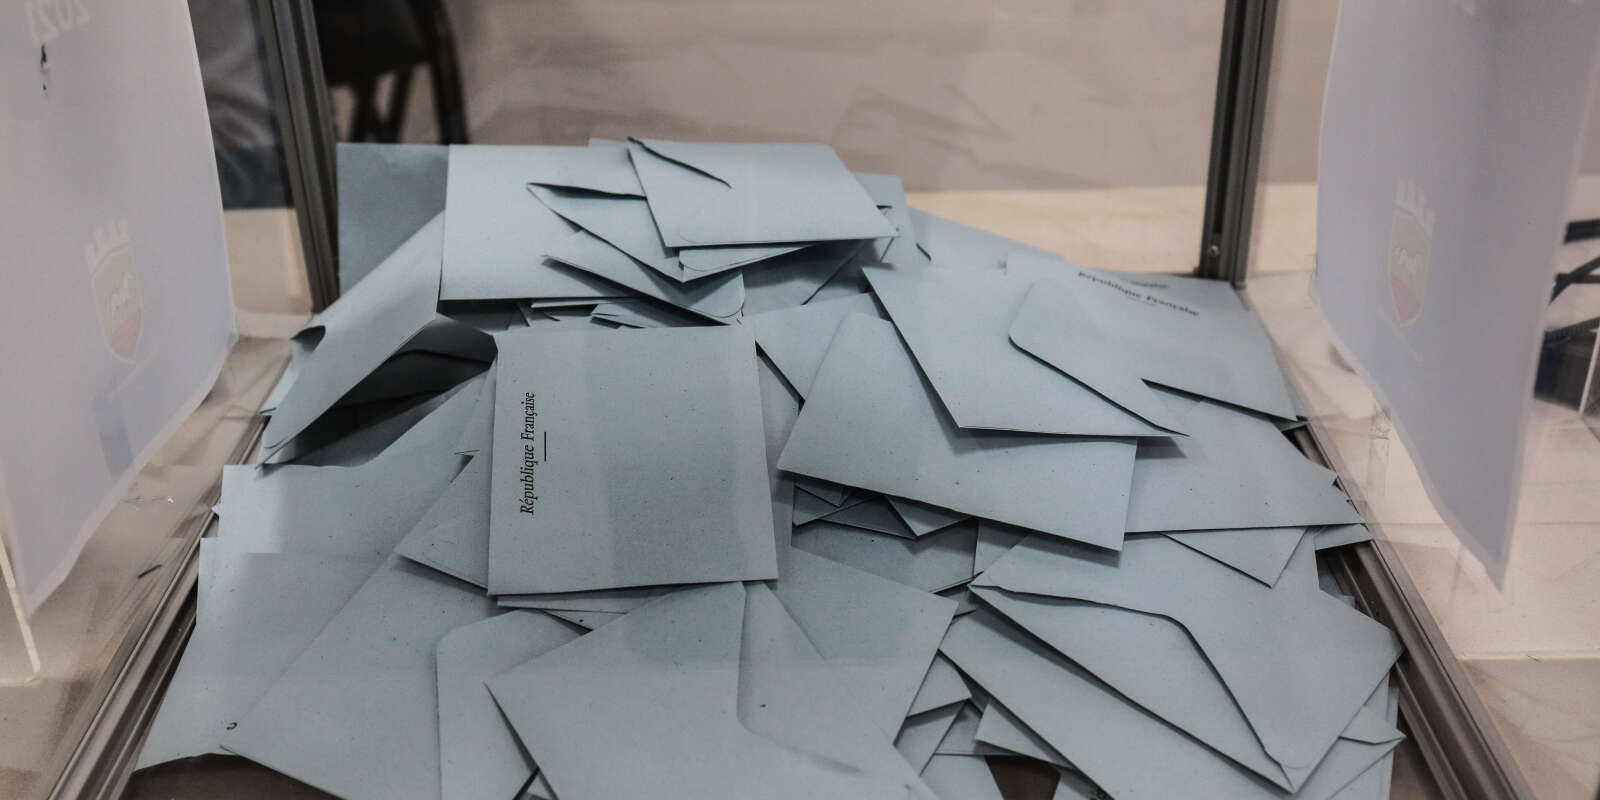 Bulletins de vote du bureau de vote de la rue gruyelle à Hénin Beaumont, le 20 juin 2021.